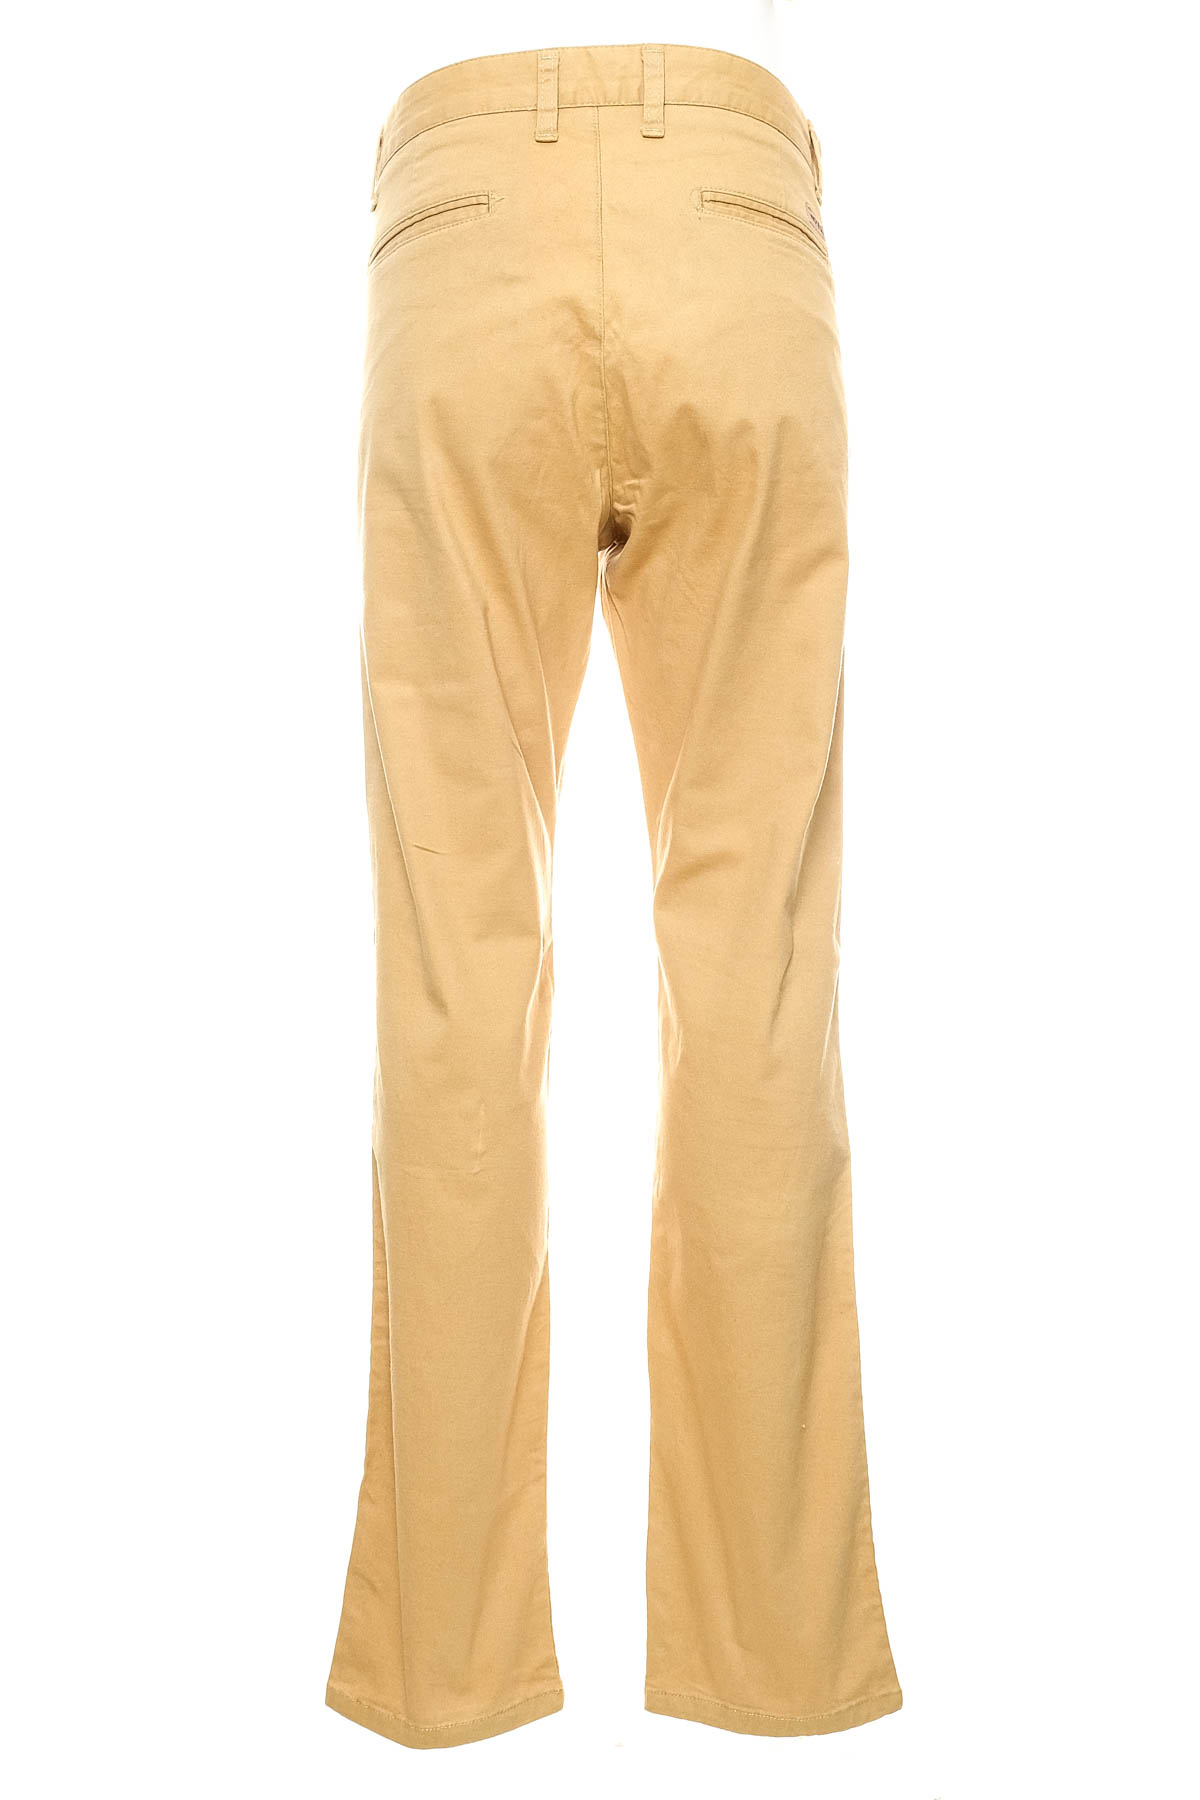 Pantalon pentru bărbați - WOTEGA - 1